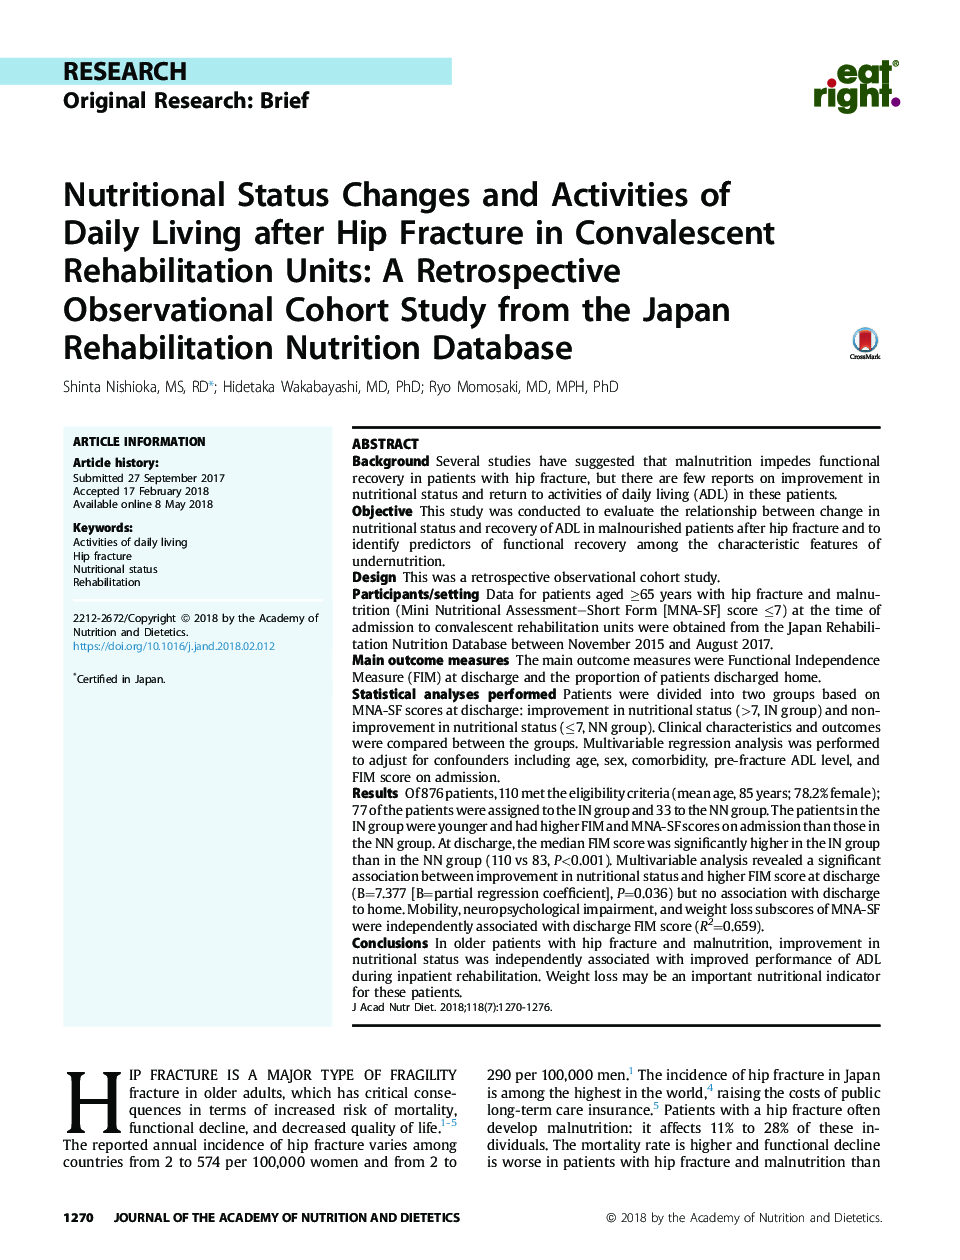 تغییرات وضعیت تغذیه ای و فعالیت های روزانه پس از شکستگی هیپ در واحدهای توانبخشی مقدماتی: مطالعه ی هماهنگی بینابینی از دیدگاه ژاپن از پایگاه داده تغذیه توانبخشی ژاپن 